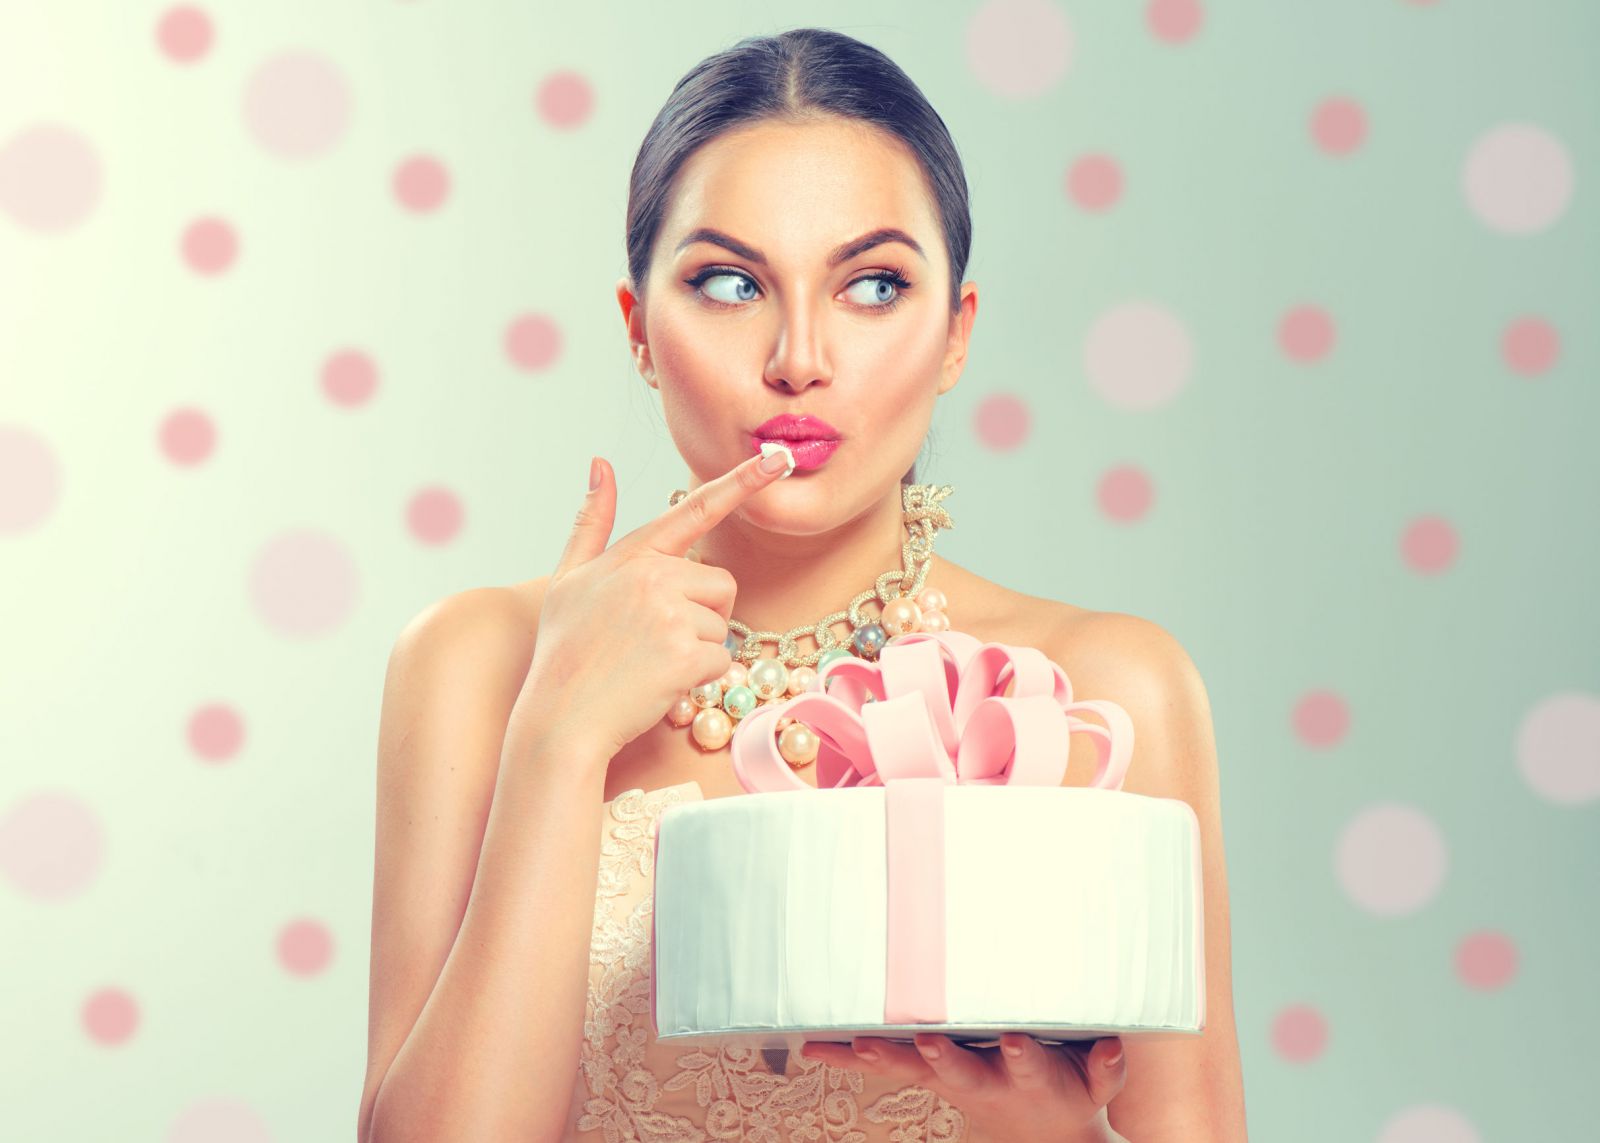 Mulher comendo um pedaço de seu bolo de aniversário com os dedos.